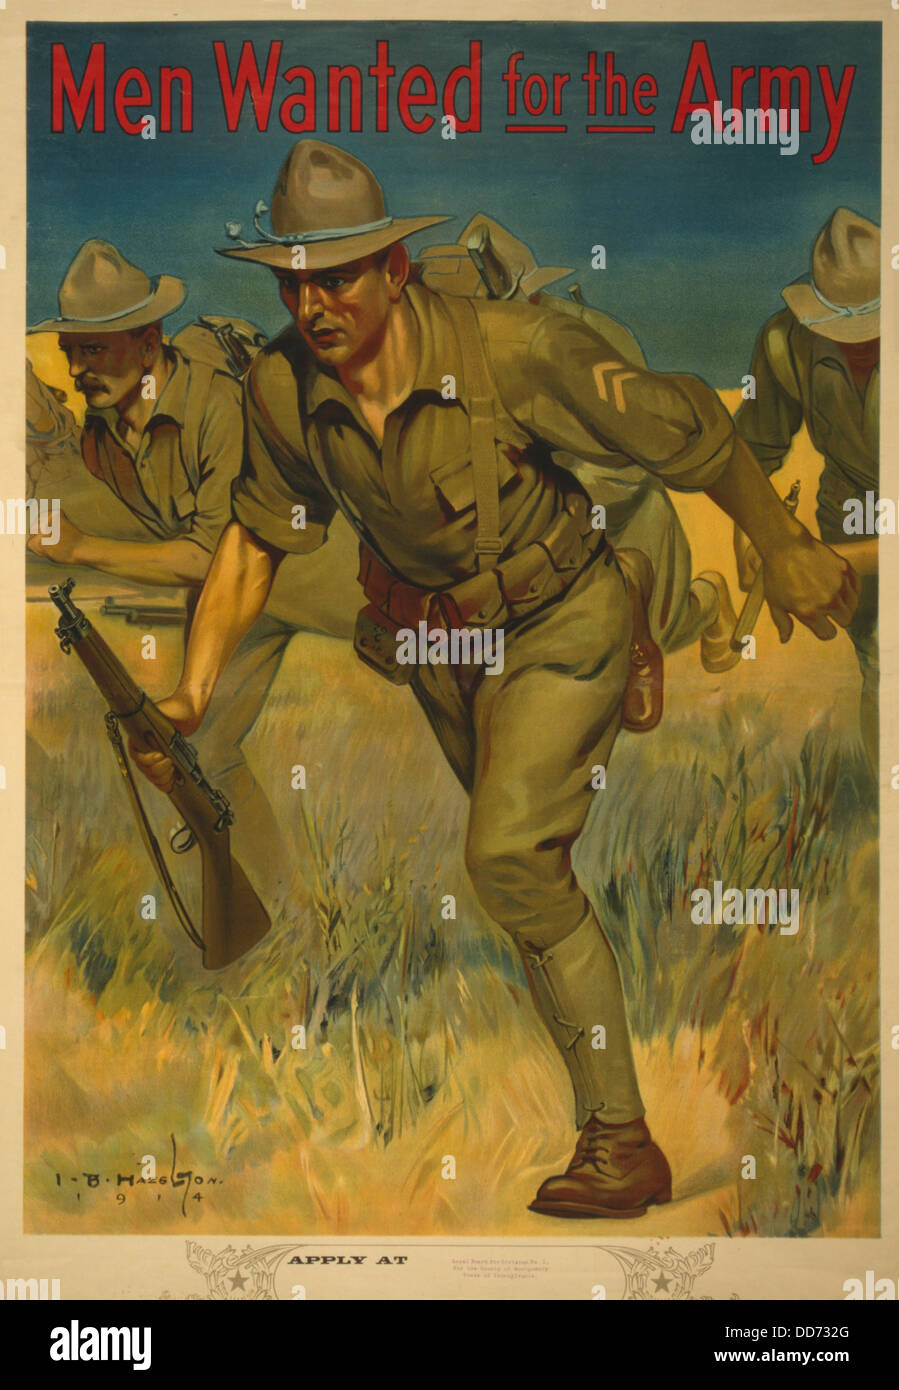 Guerra mondiale 1. Esercito Americano il reclutamento di poster che mostra i soldati con i fucili in carica. Si legge, gli uomini volevano per l'esercito." 1914. Foto Stock